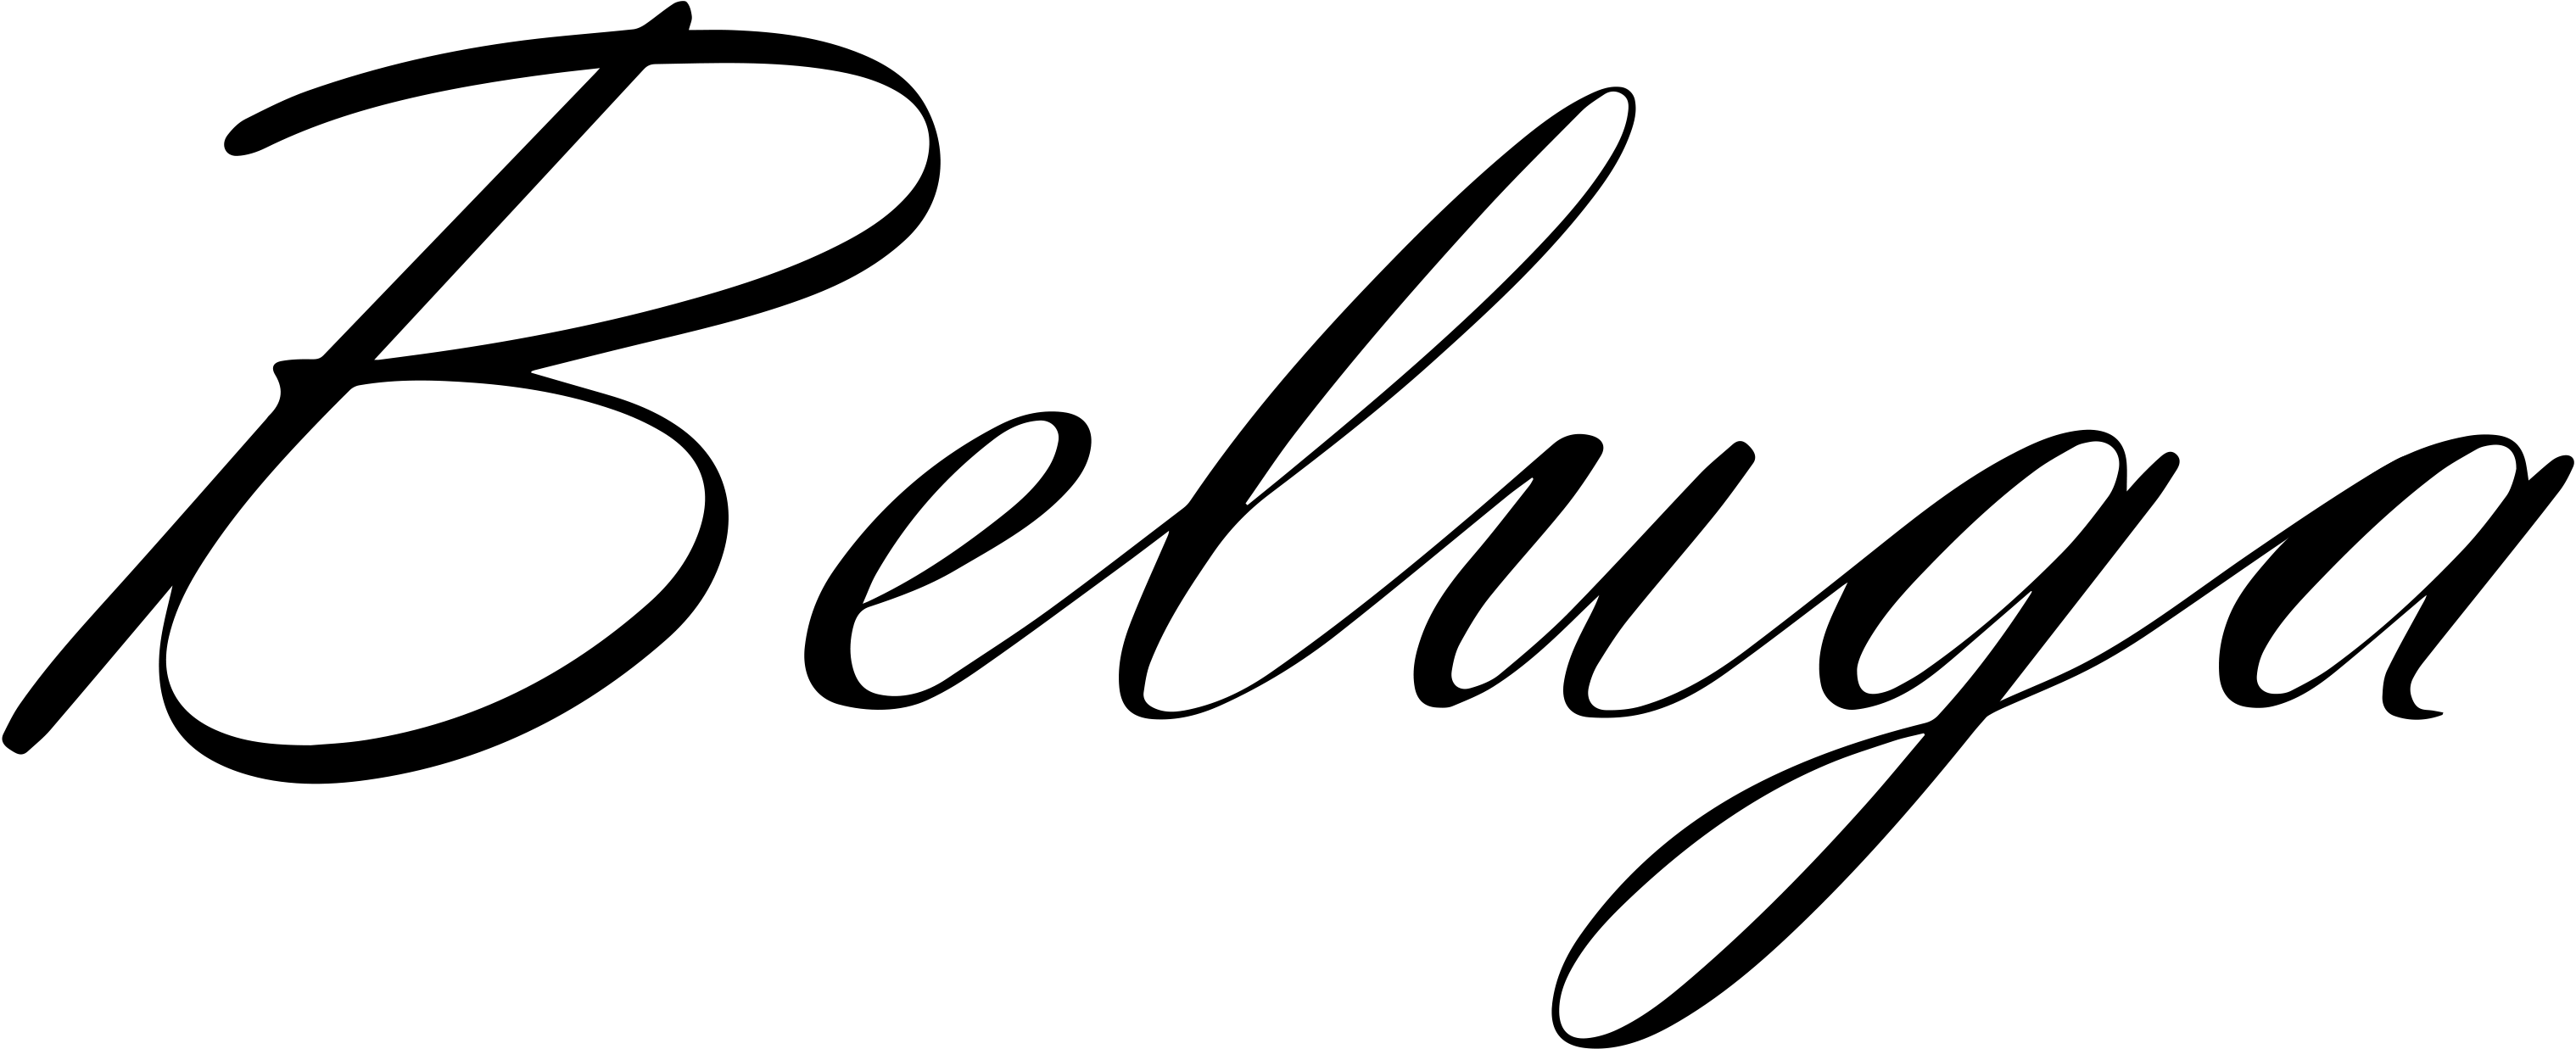 Beluga Logo